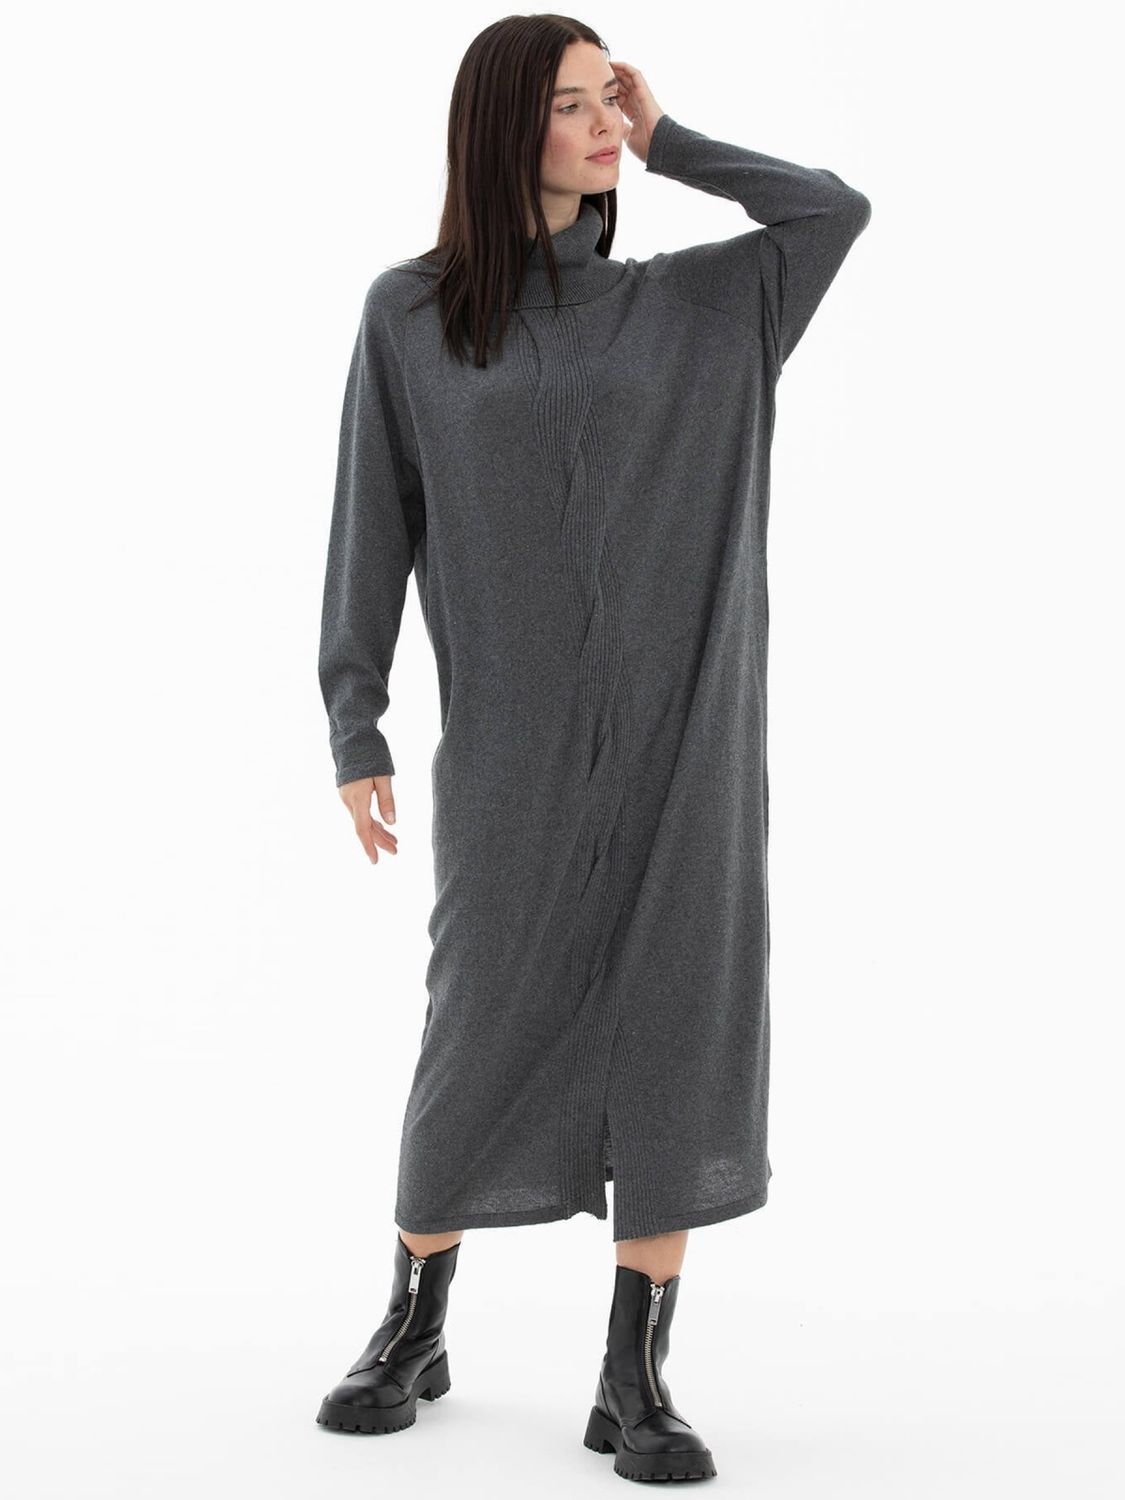 Теплое вязаное платье оверсайз серого цвета - фото